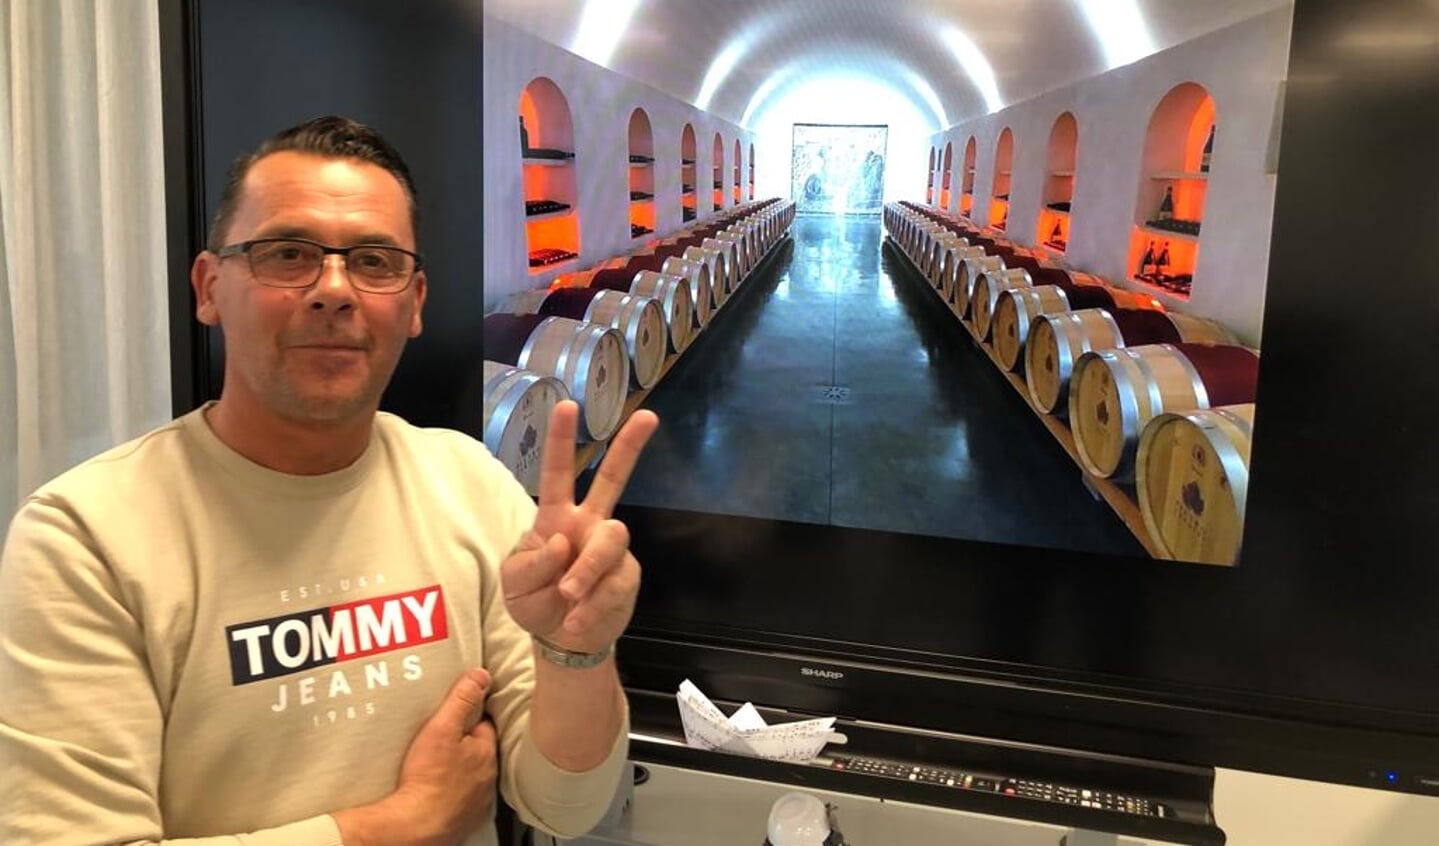 Pietro Zardini uit Italië vertelt over zijn wijnhuis in workshop tijdens de voorjaarsproeverij